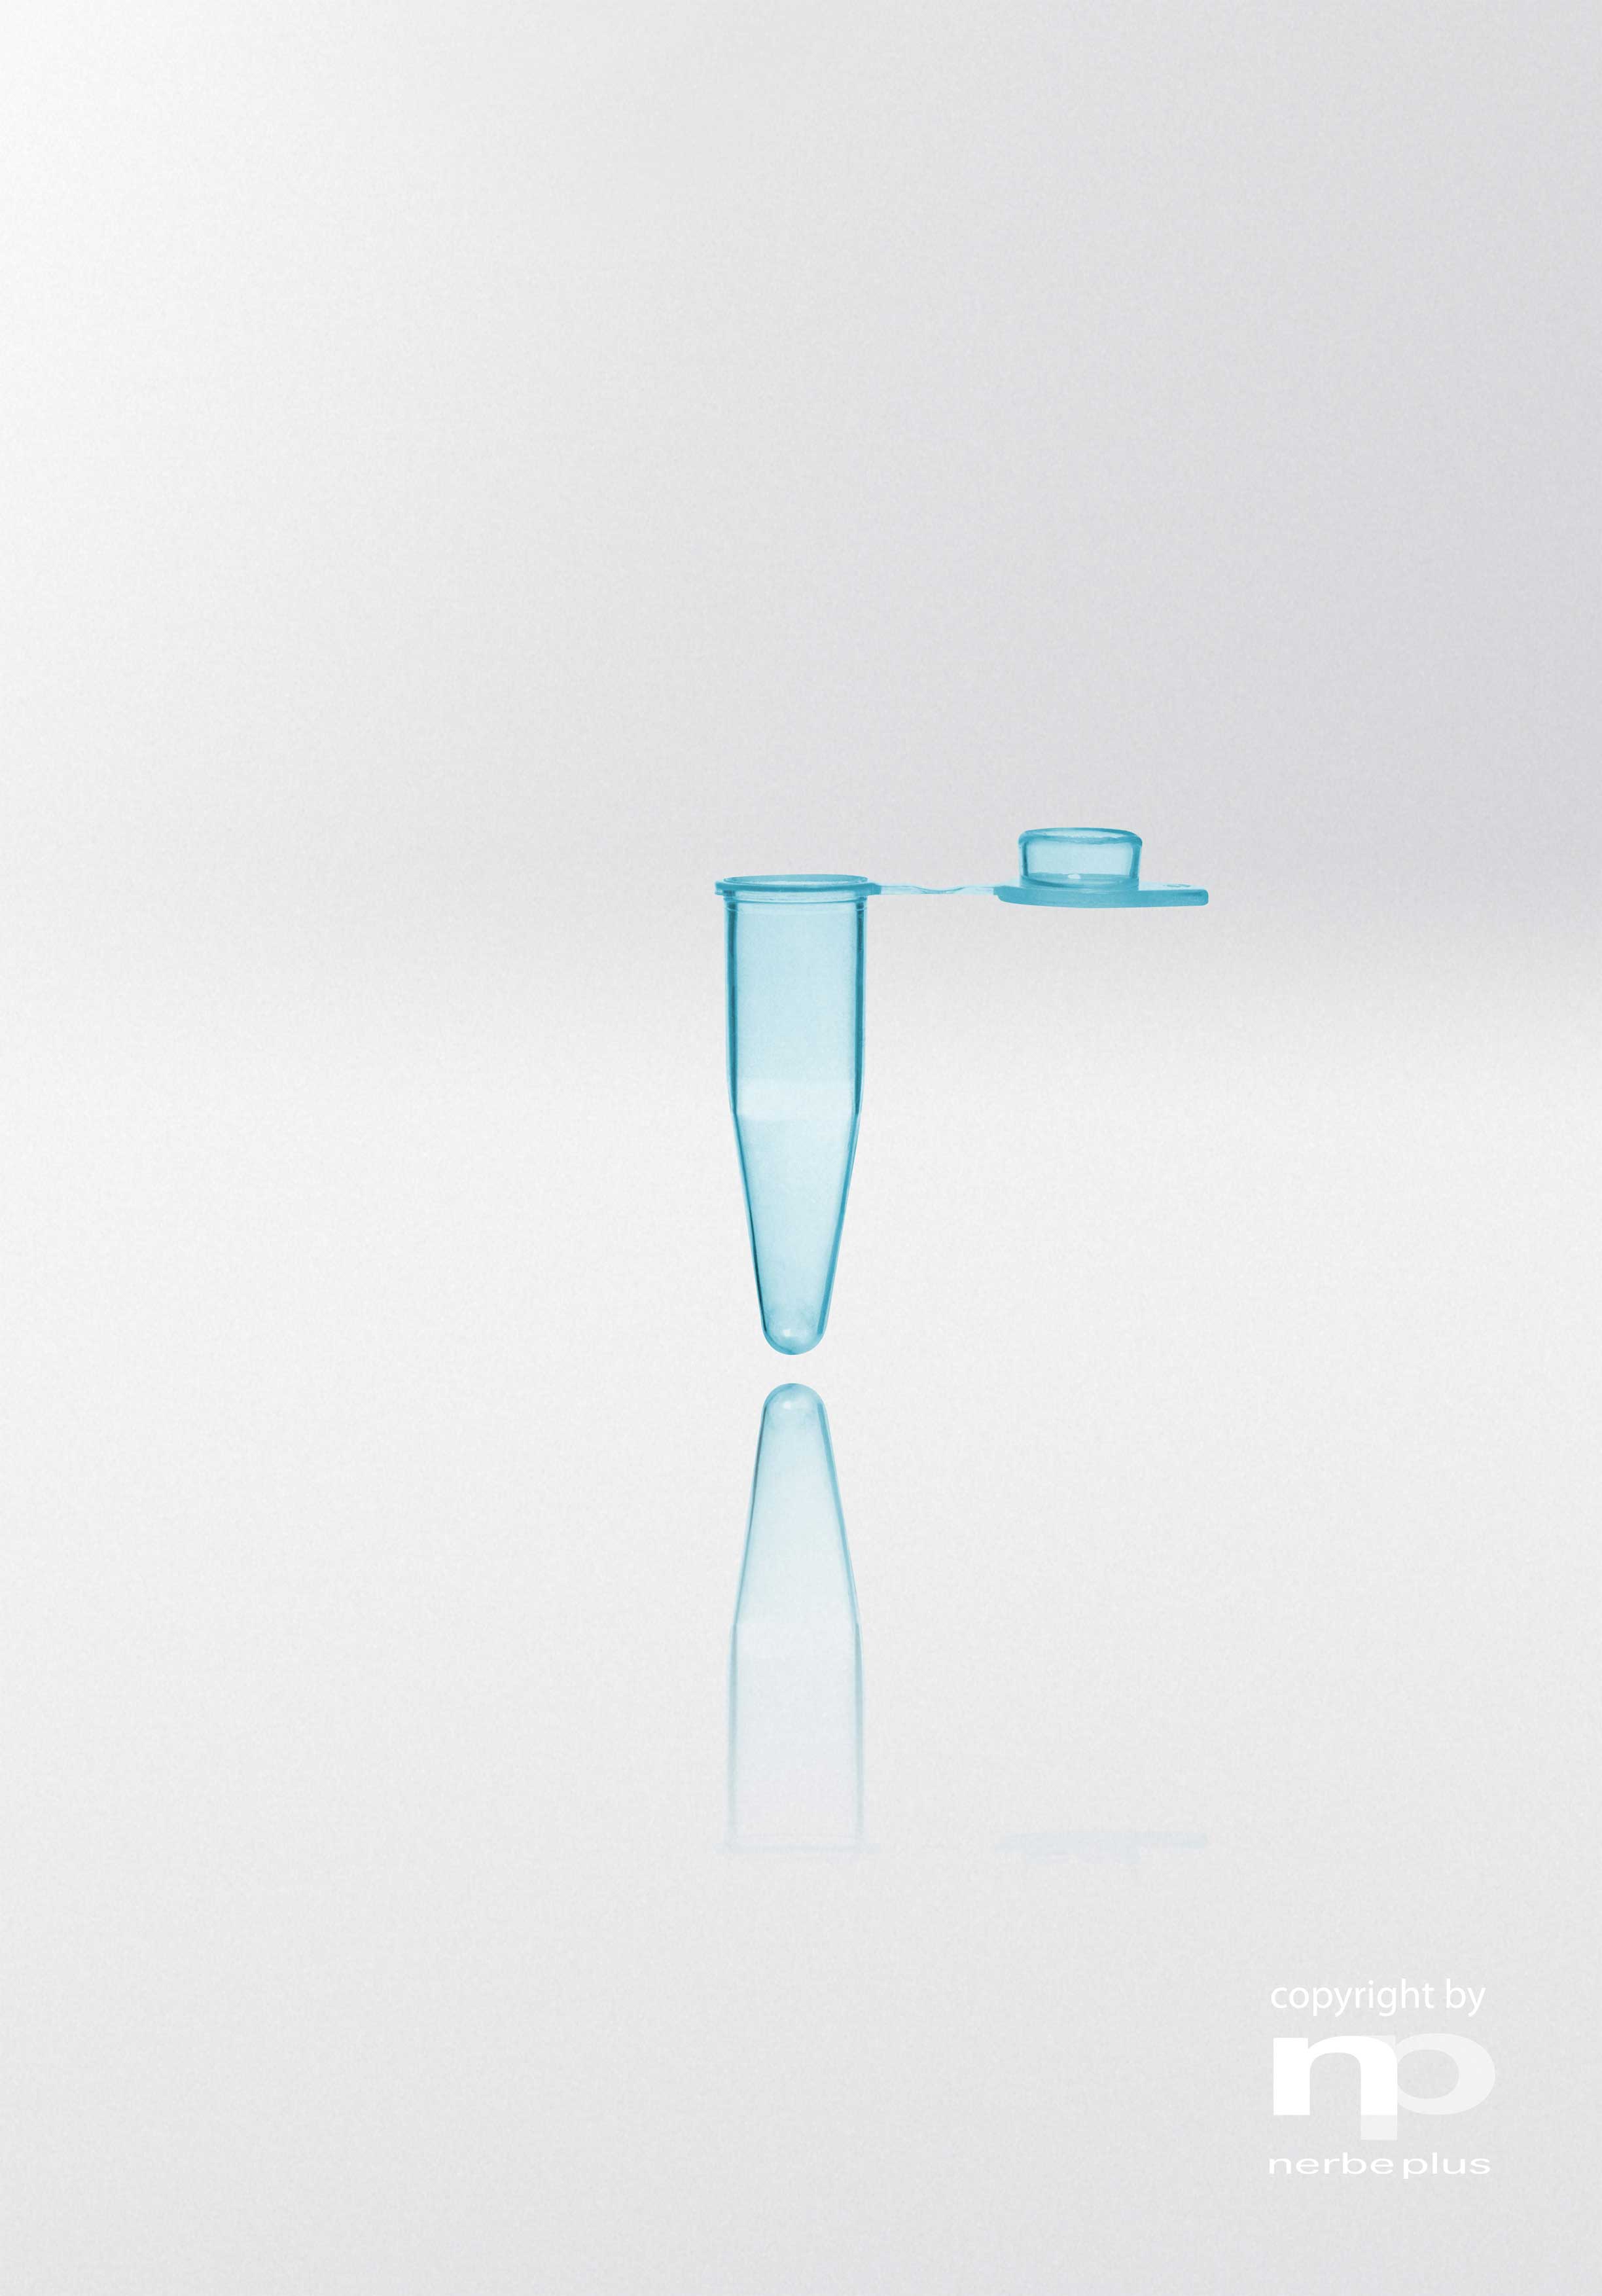 Tubos para PCR. NERBE-PLUS. Capacidad (ml): 0,2. Resist. centrif. (g): 20000. Tapón: Plano y mate. Color tubo/tapón: Azul/Azul. Esterilidad: PCR Ready.